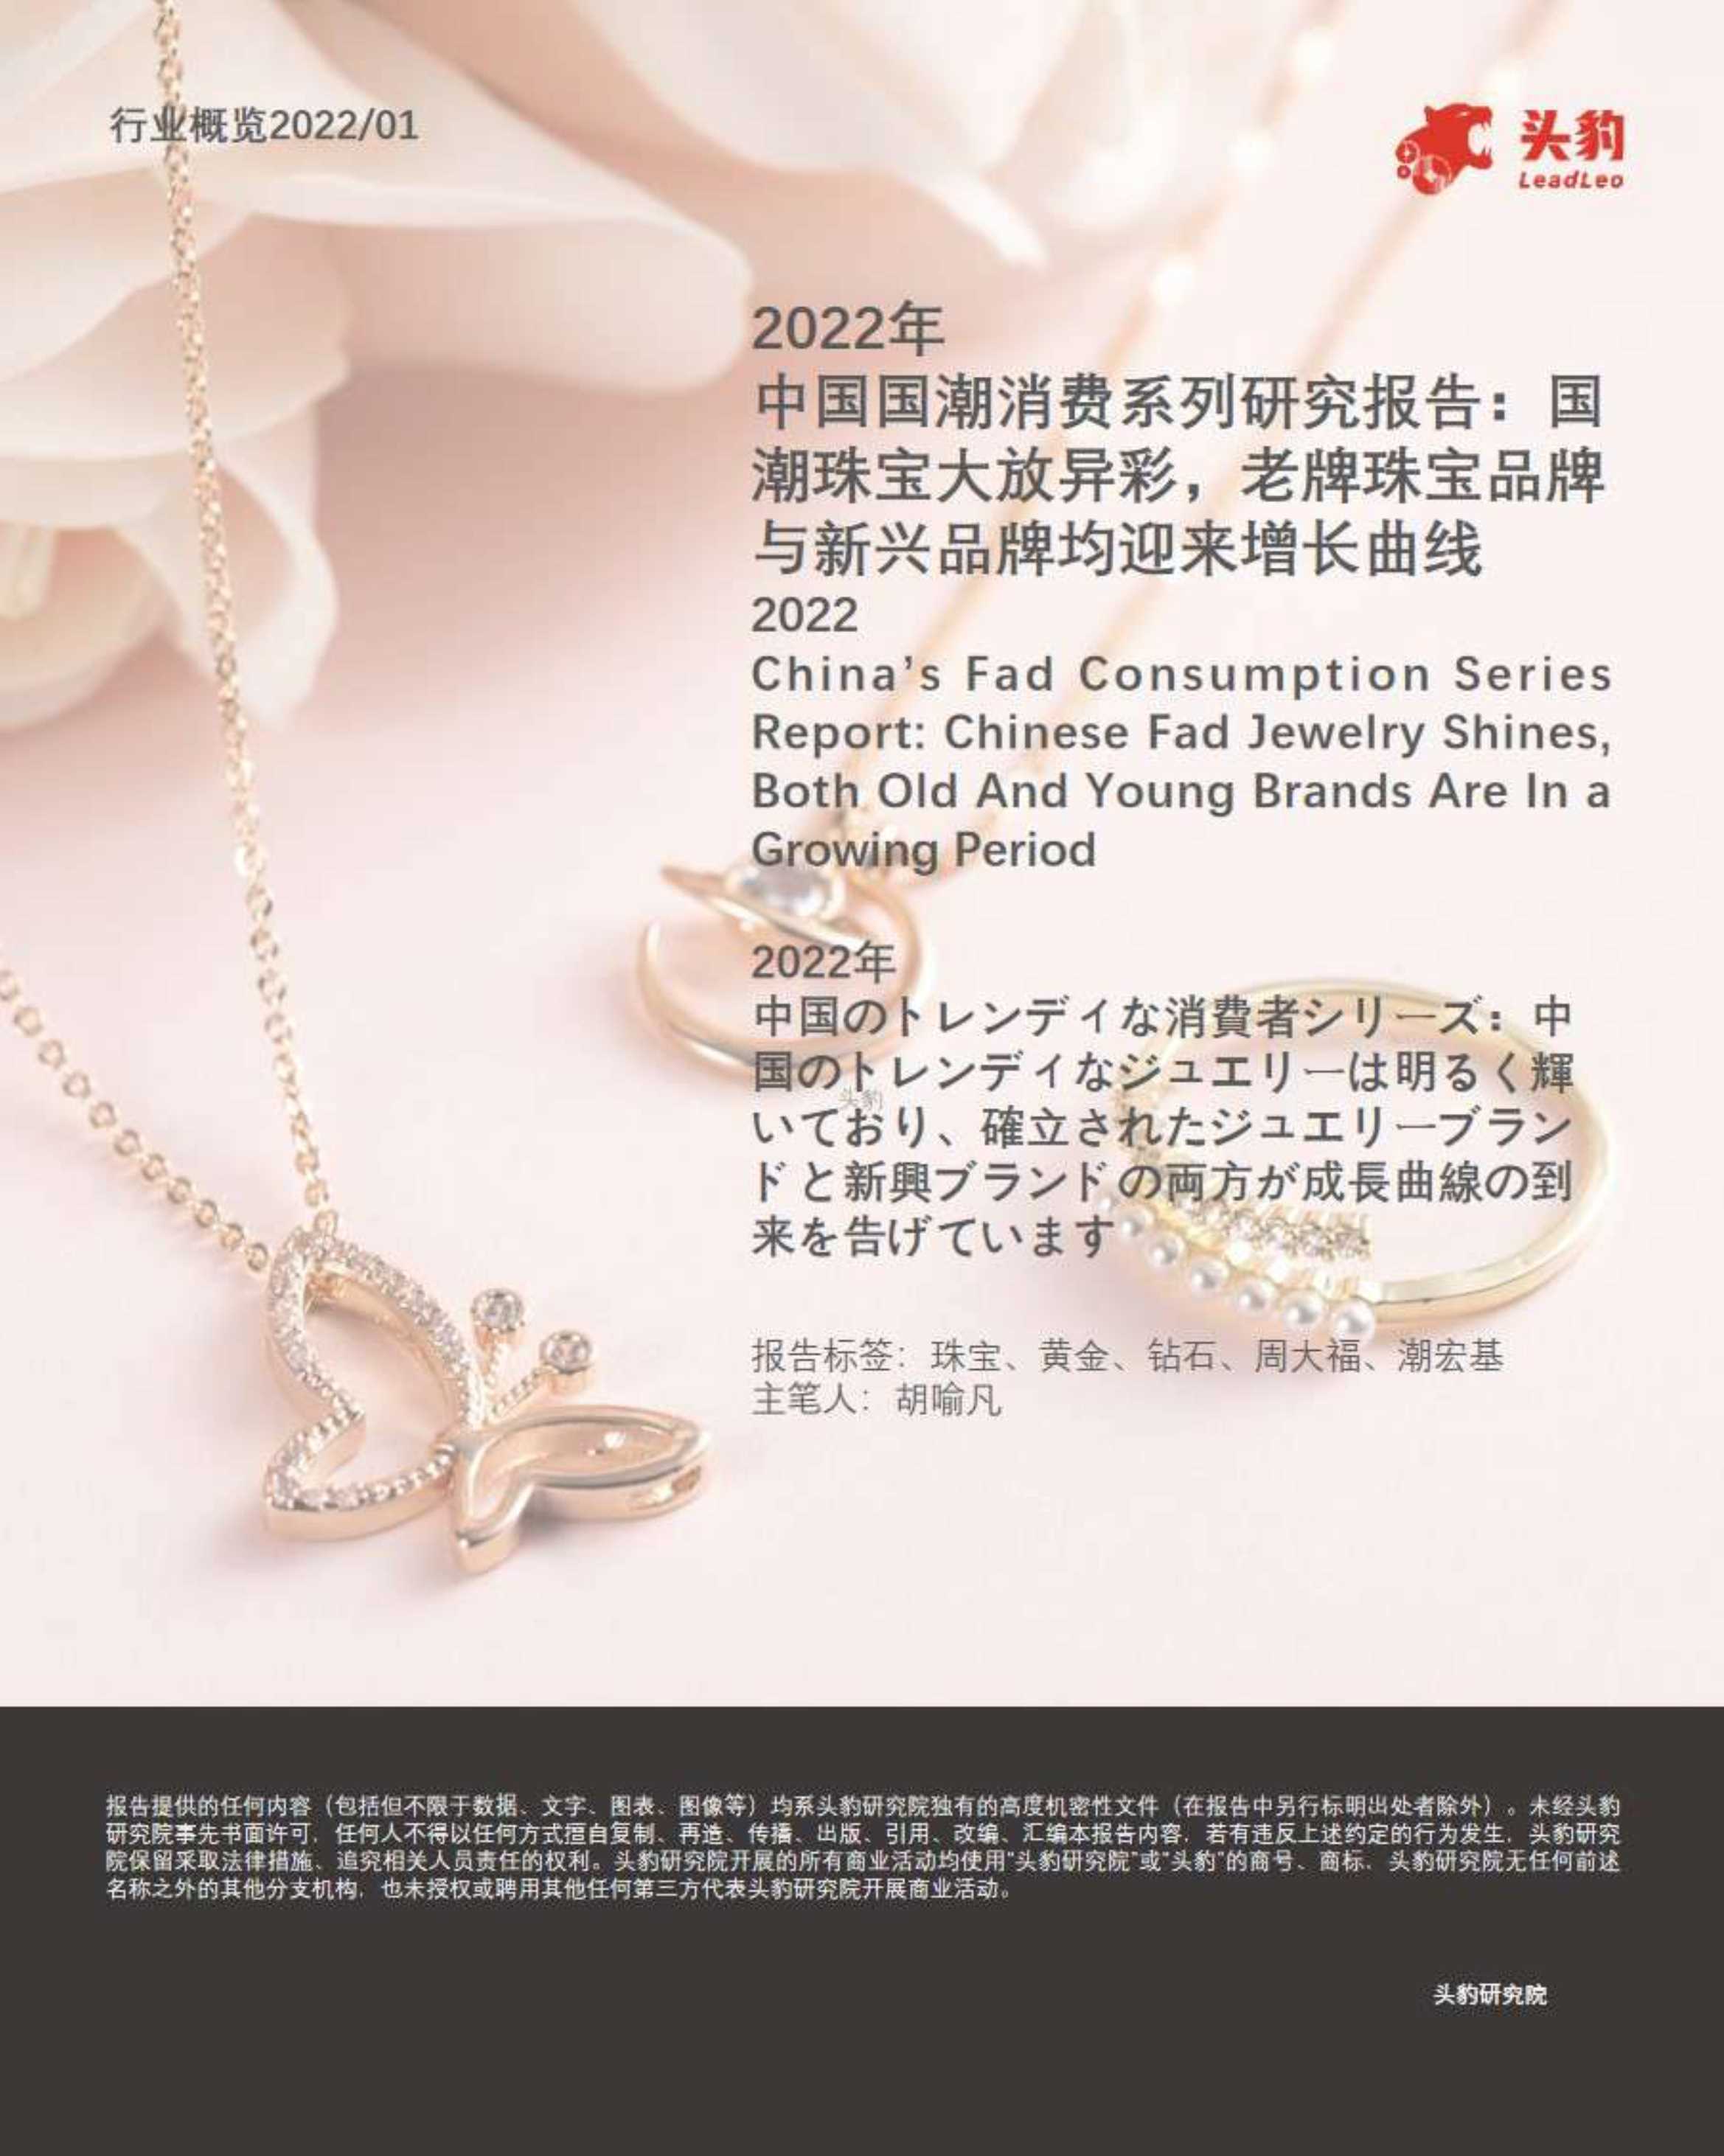 2022年中国国潮消费系列研究报告：国潮珠宝大放异彩，老牌珠宝品牌与新兴品牌均迎来增长曲线-2022.02-36页